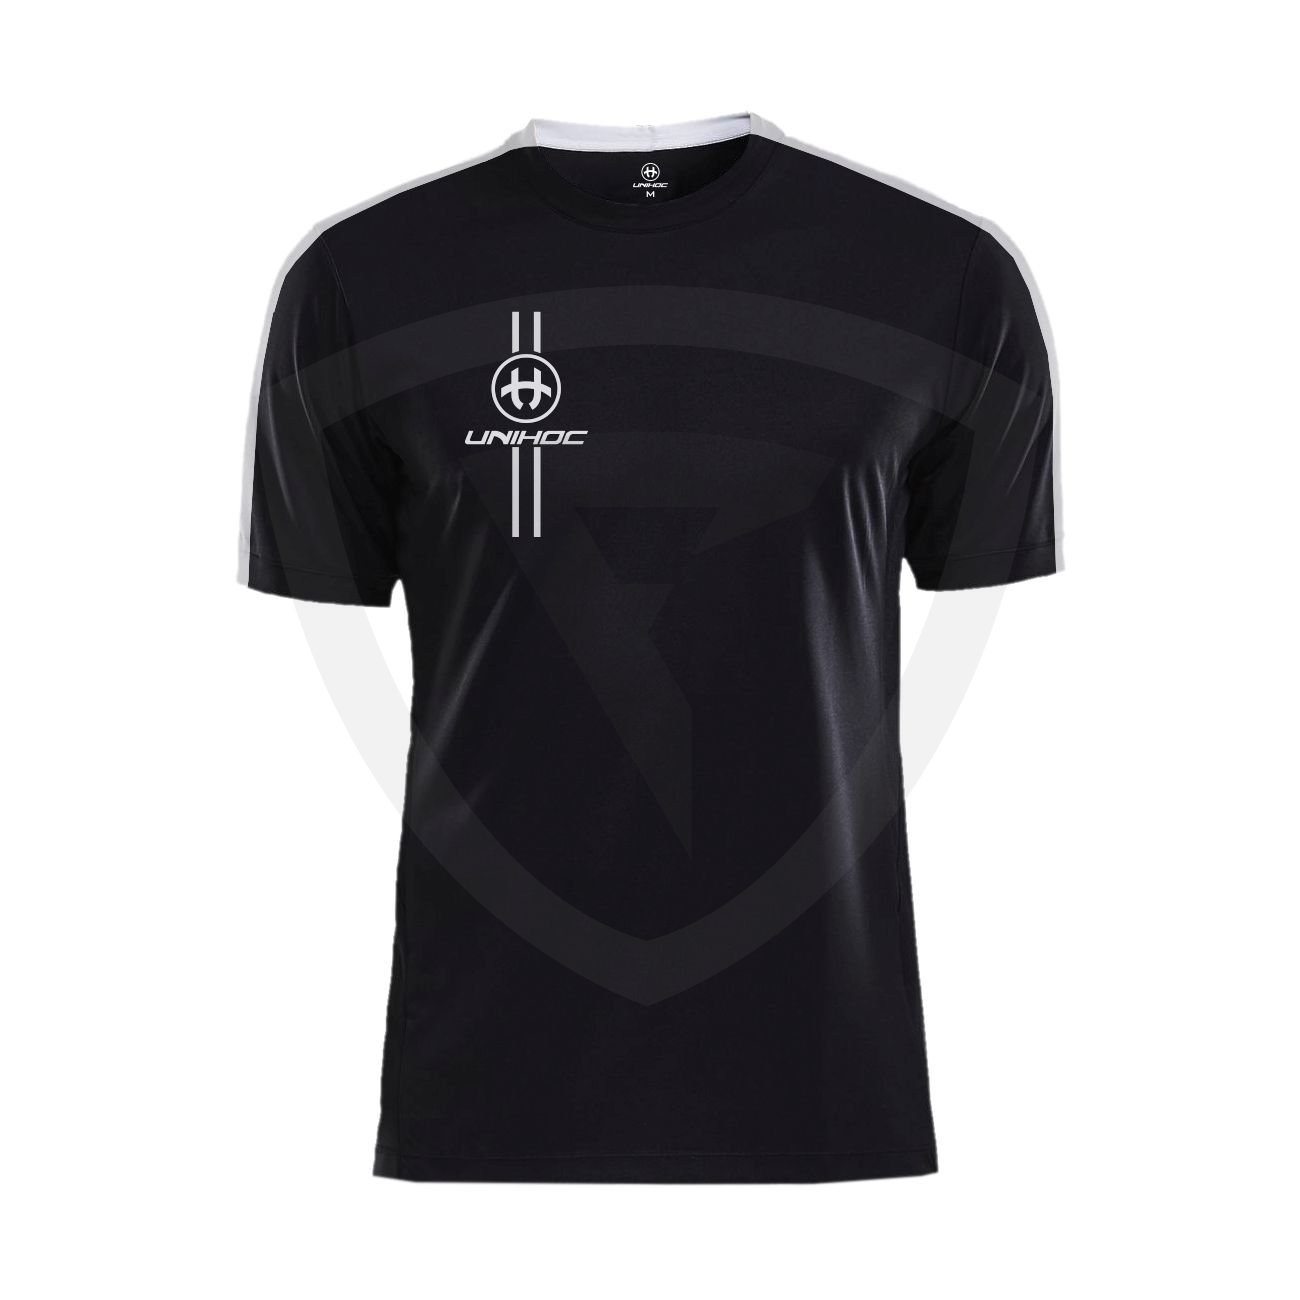 Unihoc Arrow T-shirt Black-White SR M černá-bílá